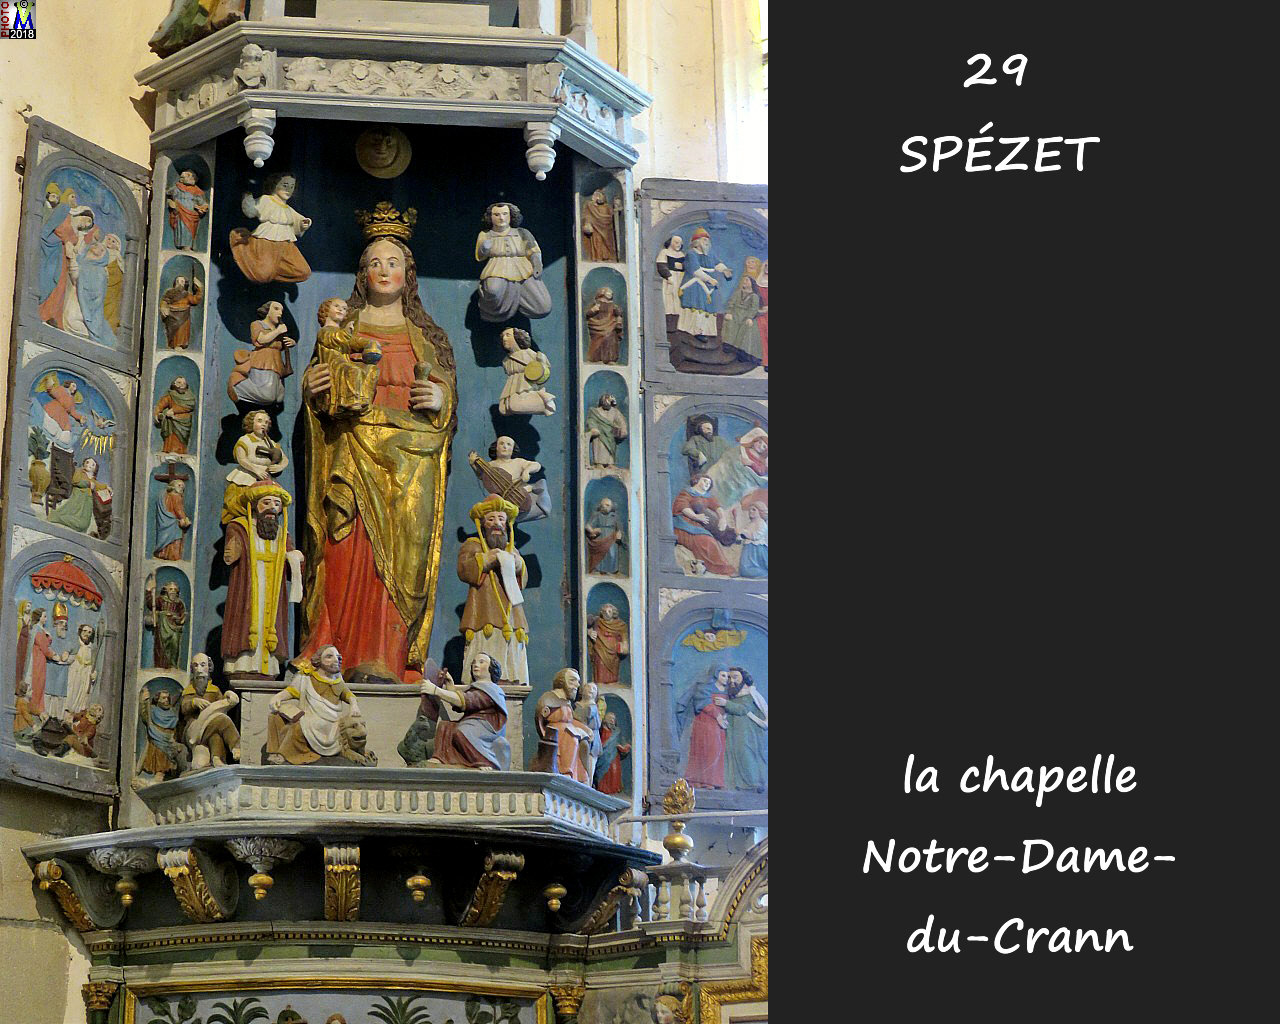 29SPEZET_chapelleNDC_216.jpg